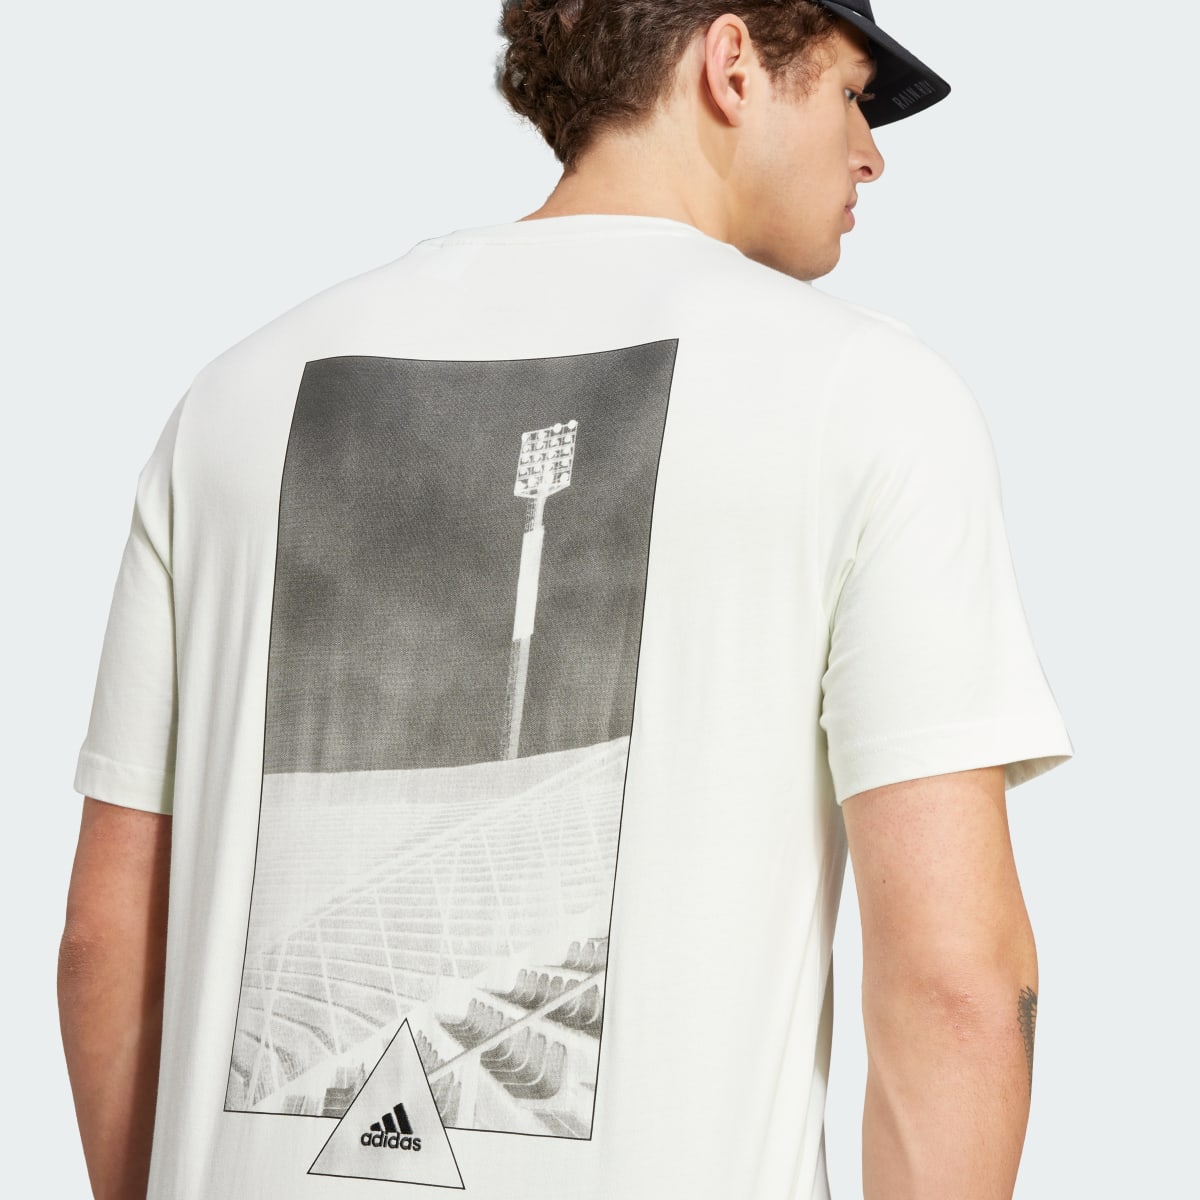 Adidas House of Tiro Graphic T-Shirt. 6